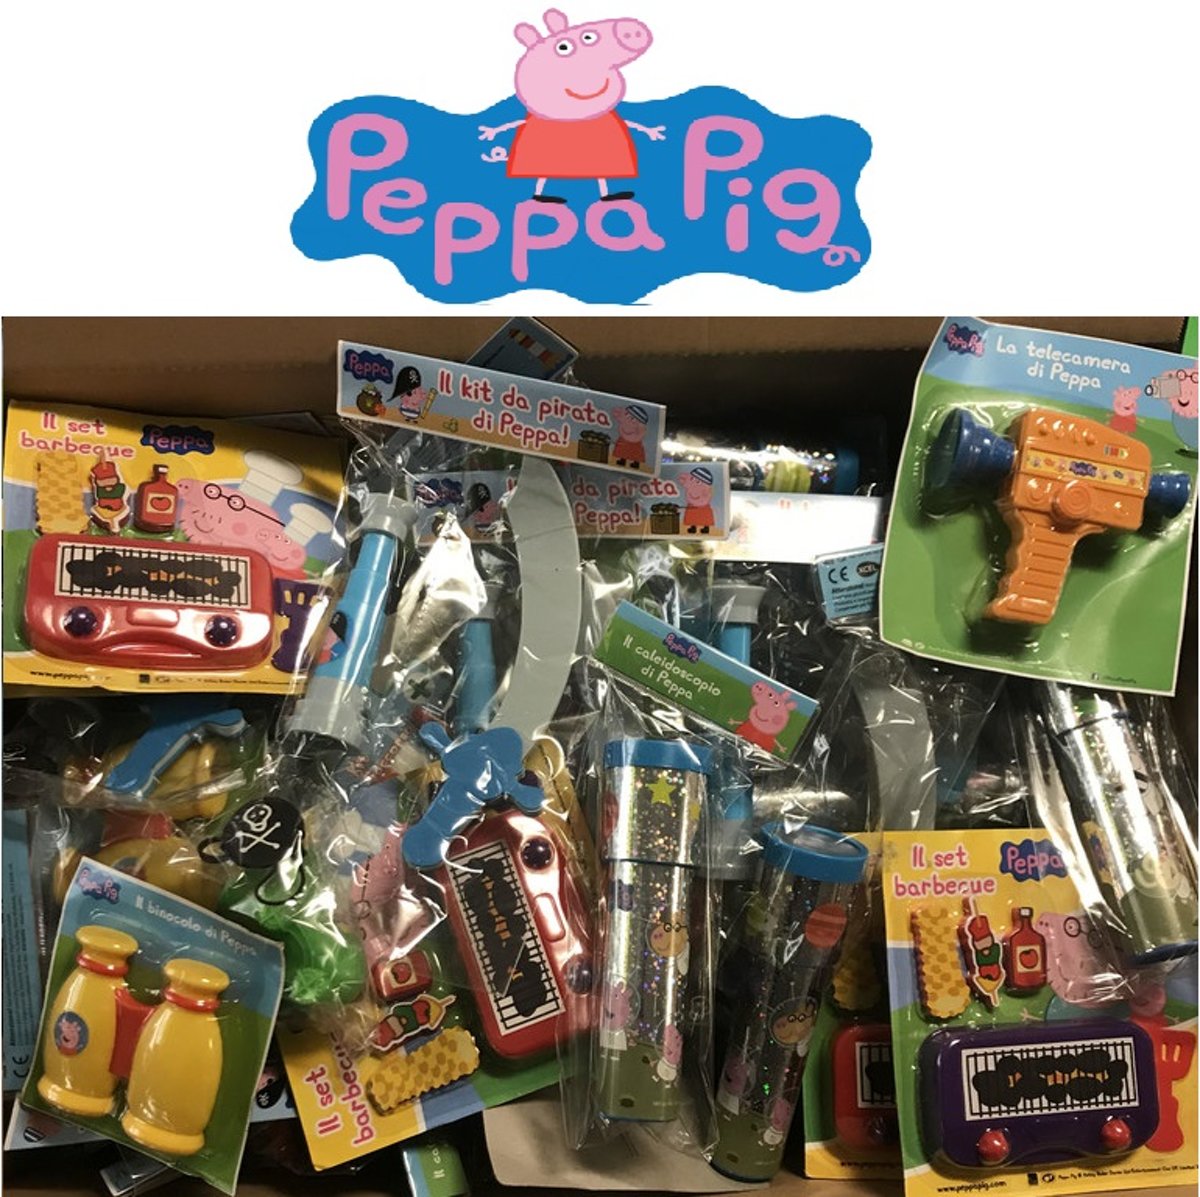 100 STUKS |  PEPPA PIG XXL MIX Uitdeelcadeautjes | Peppa Pig Speelgoed Traktatie / Trakteren Kados voor Kinderverjaardag of Kinderfeestje (100 stuks)